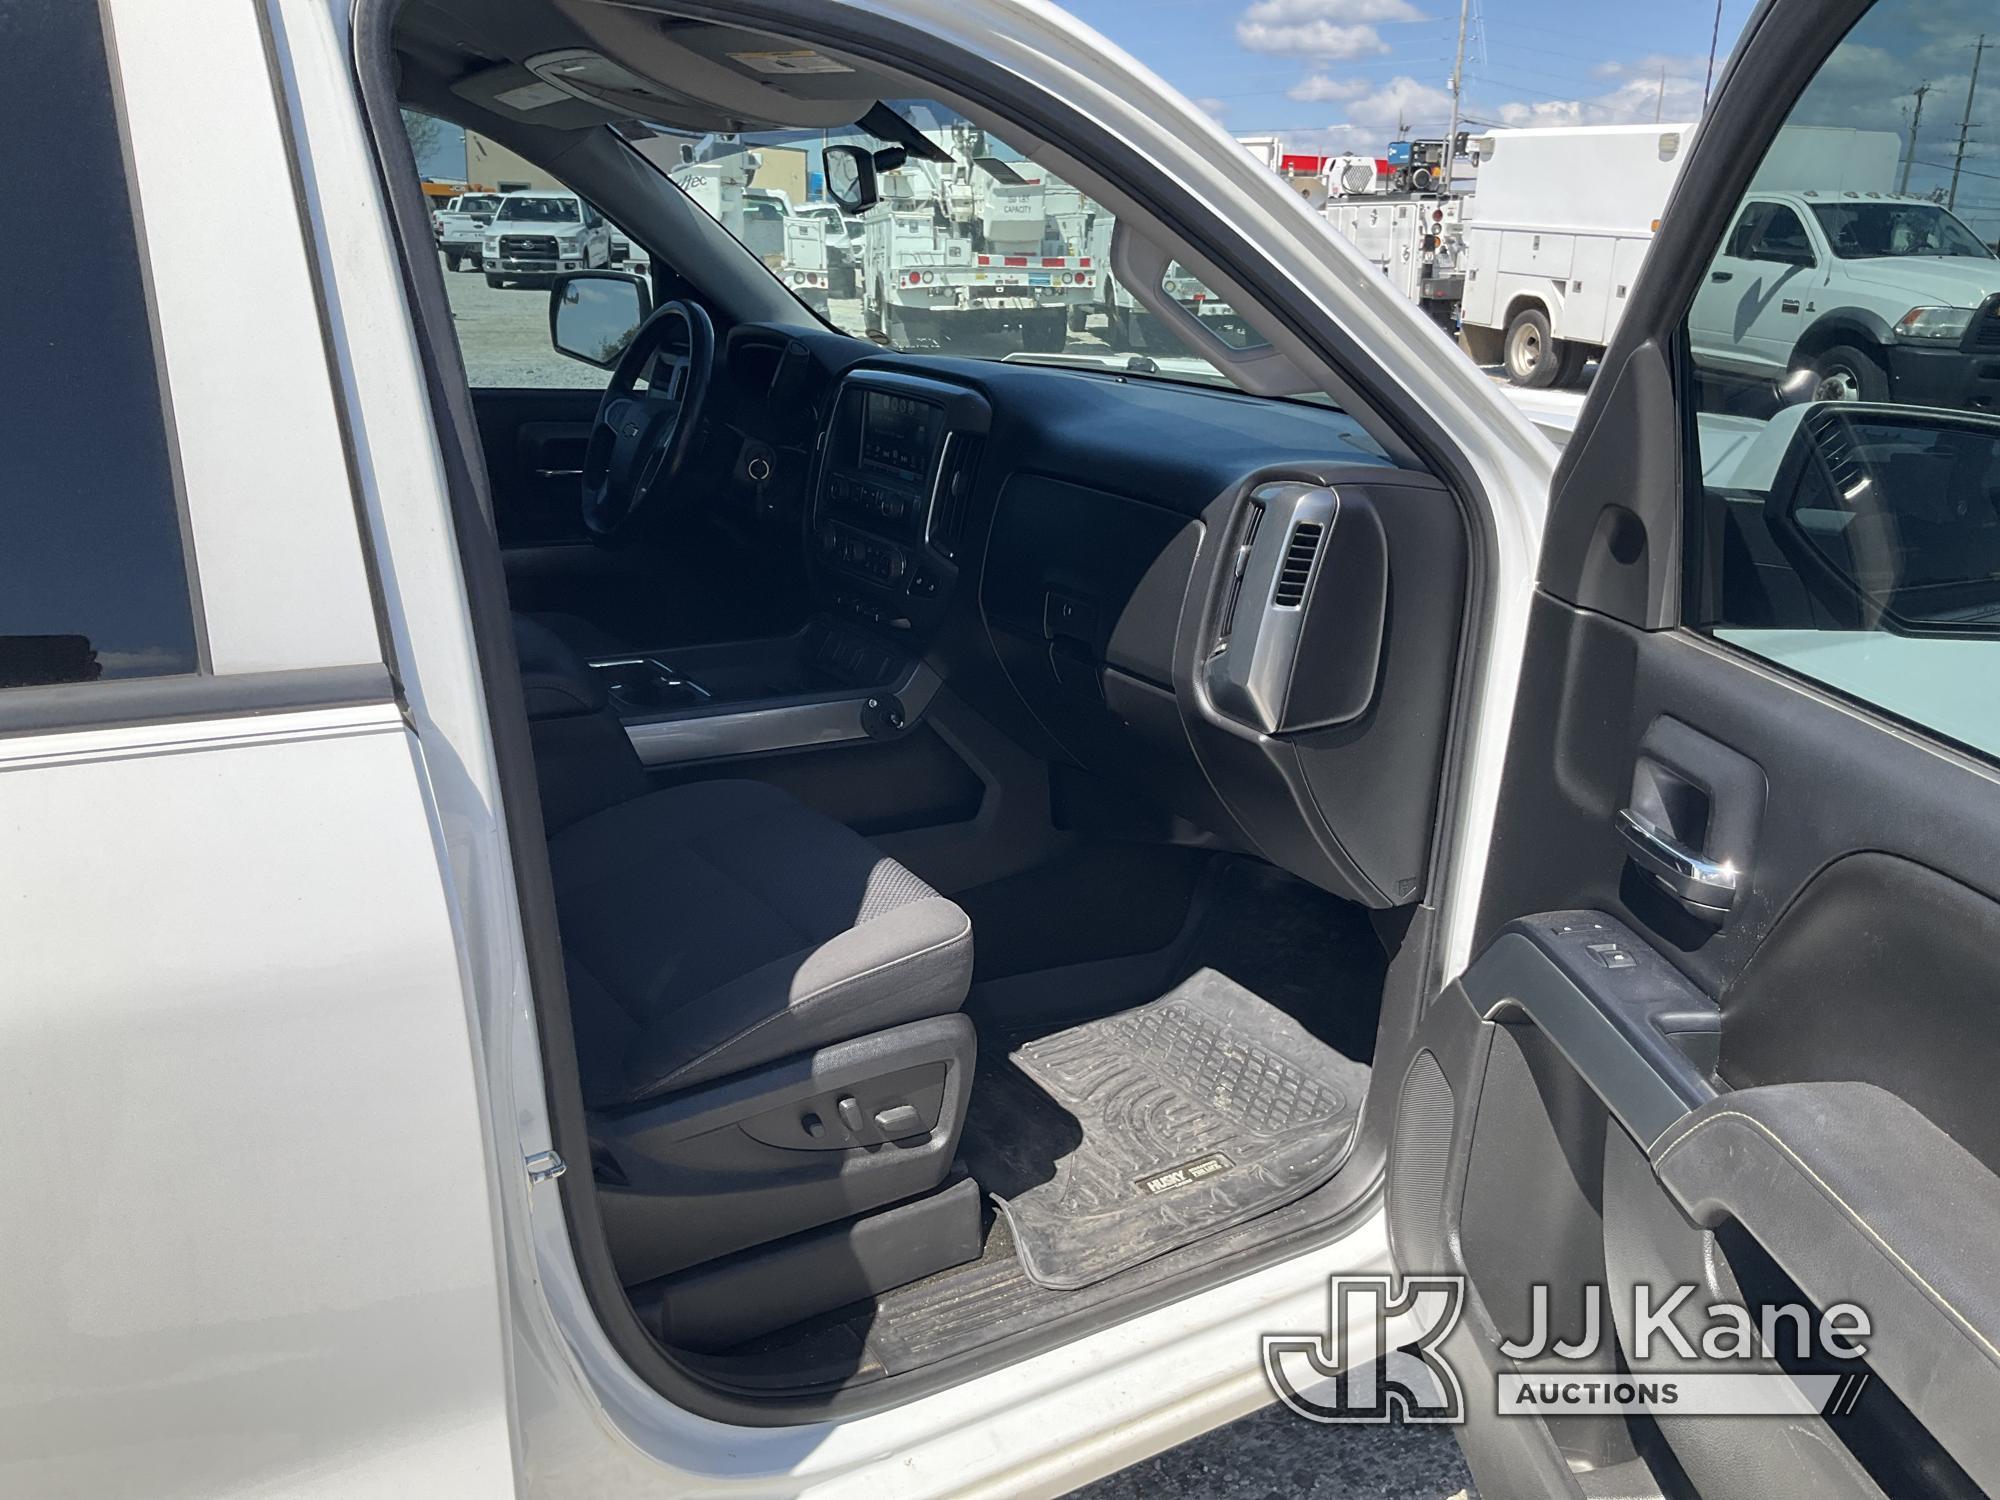 (Villa Rica, GA) 2017 Chevrolet Silverado 1500 4x4 Crew-Cab Pickup Truck Runs & Moves) (Body Damage